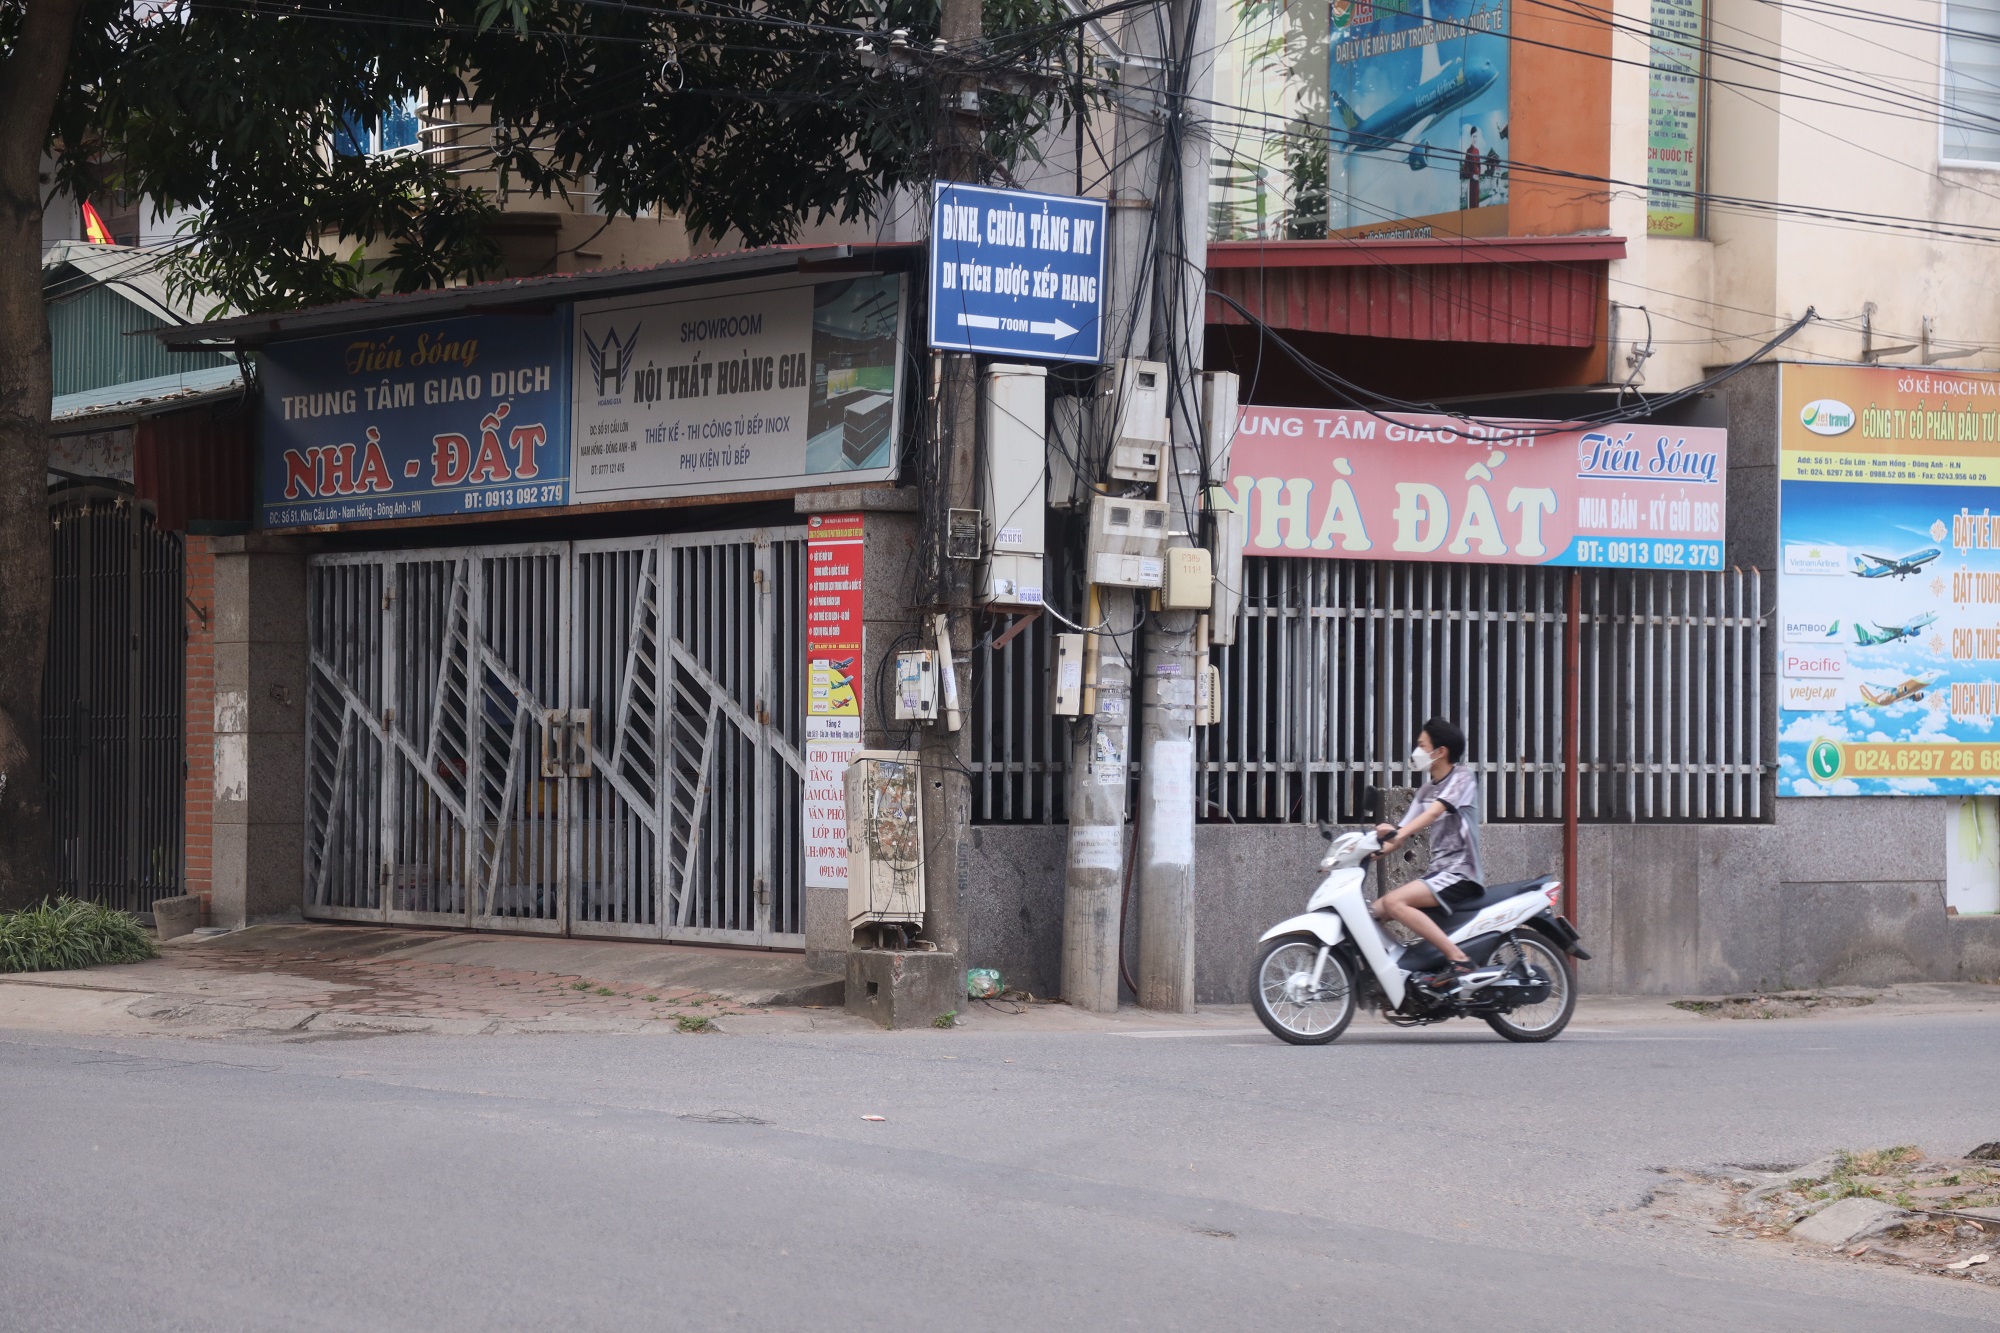 Thị trường chững lại khiến nhiều văn phòng môi giới bất động sản ế ẩm phải đóng cửa (Ảnh: Thái Nguyễn)